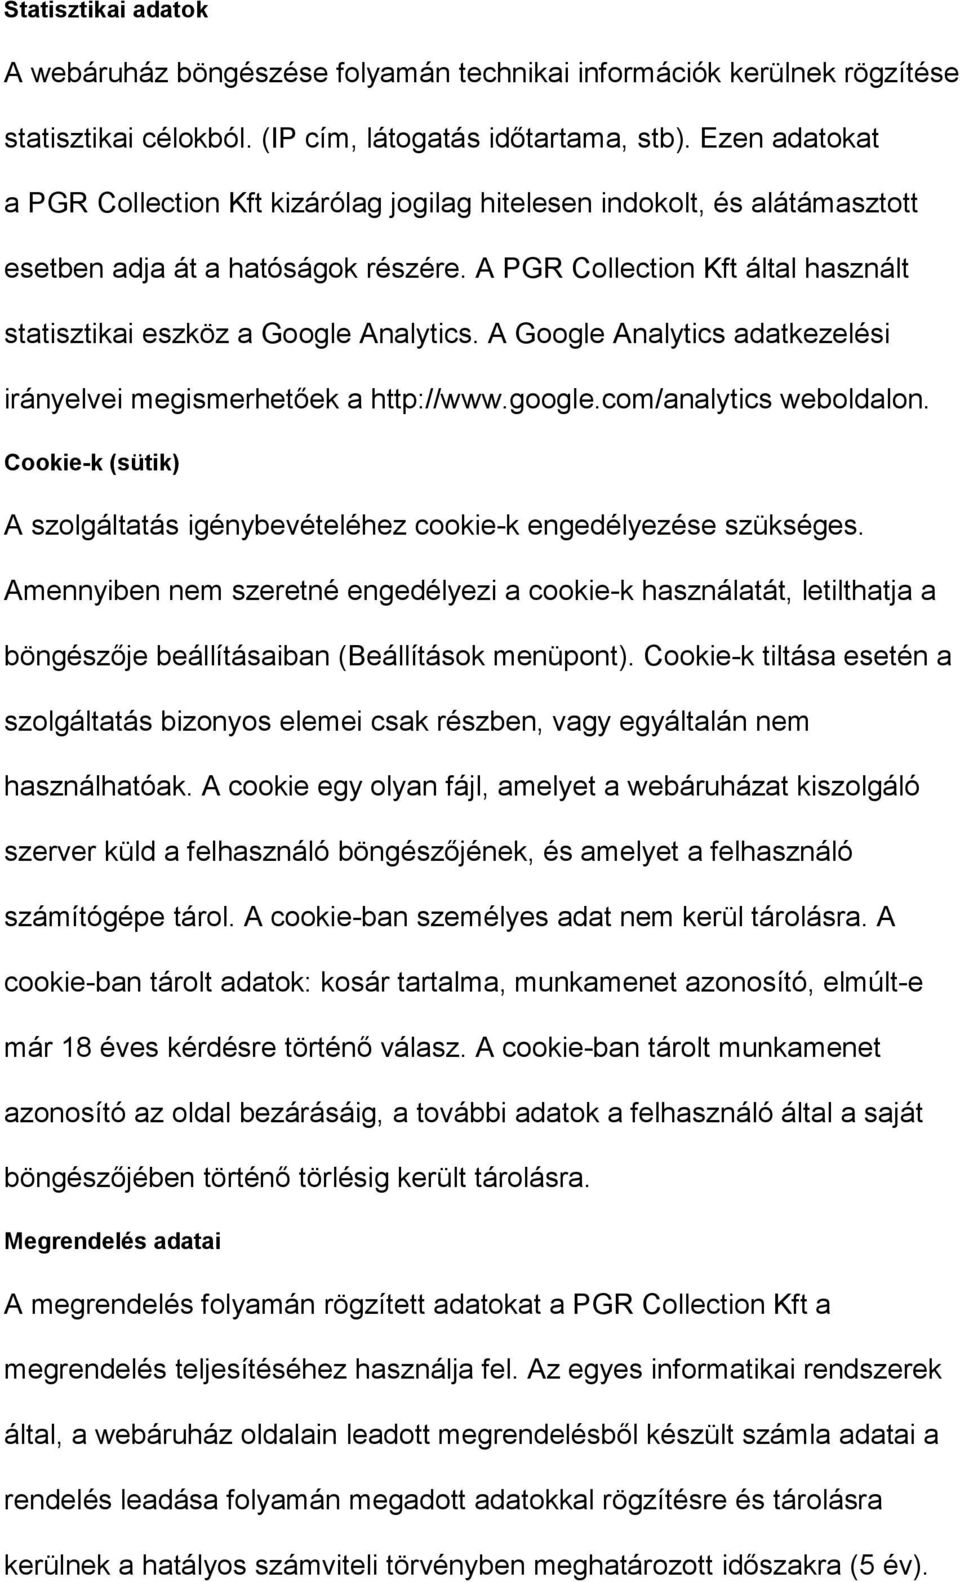 A PGR Collection Kft által használt statisztikai eszköz a Google Analytics. A Google Analytics adatkezelési irányelvei megismerhetőek a http://www.google.com/analytics weboldalon.